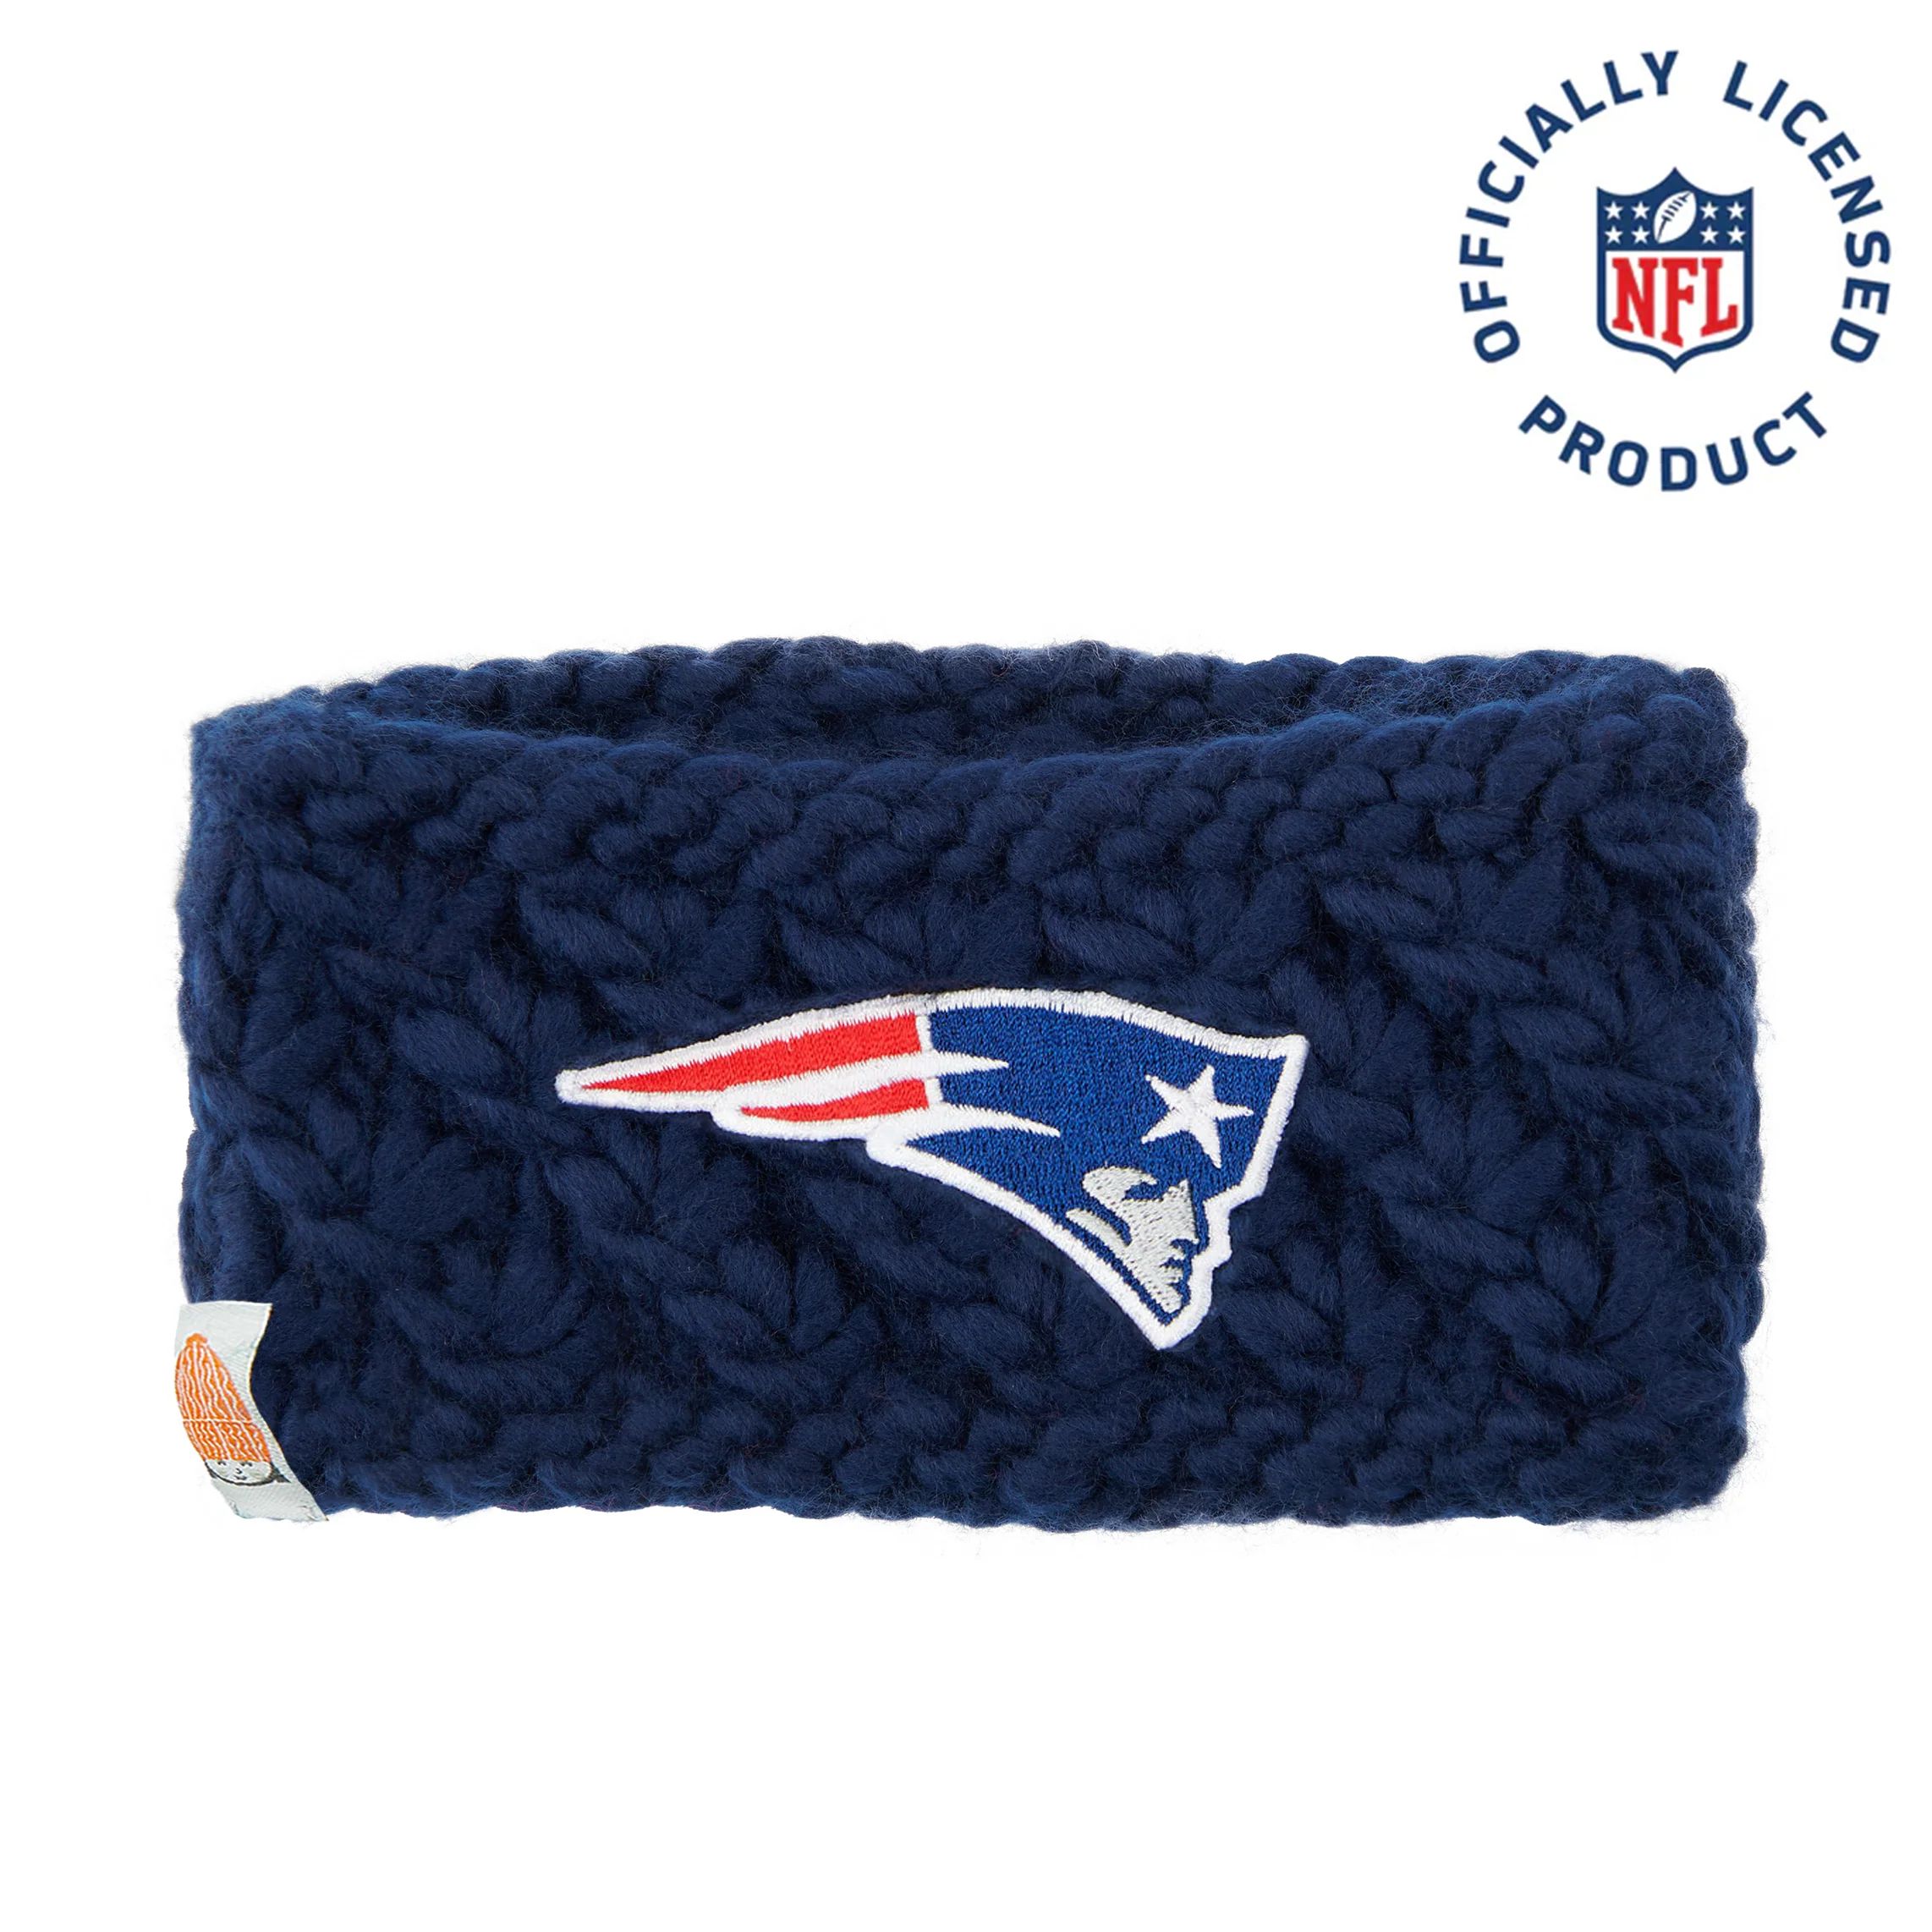 The Pats Headband | NFL Winter Accessories | Sh*t That I Knit | Sh*t That I Knit